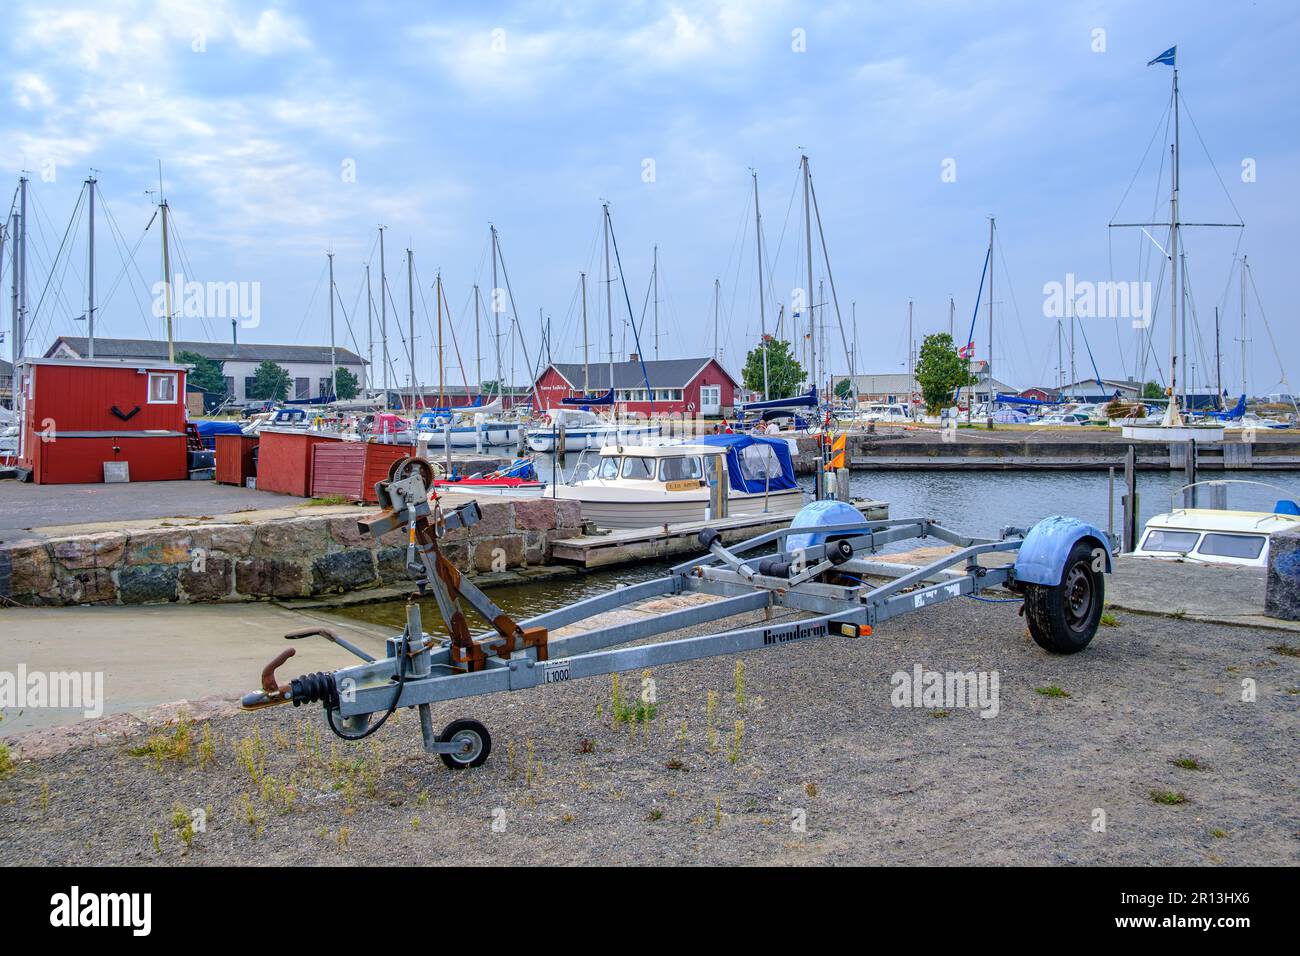 Scène maritime dans le port de plaisance de Roenne, la quasi capitale de l'île de Bornholm, Danemark, Scandinavie, Europe. Banque D'Images